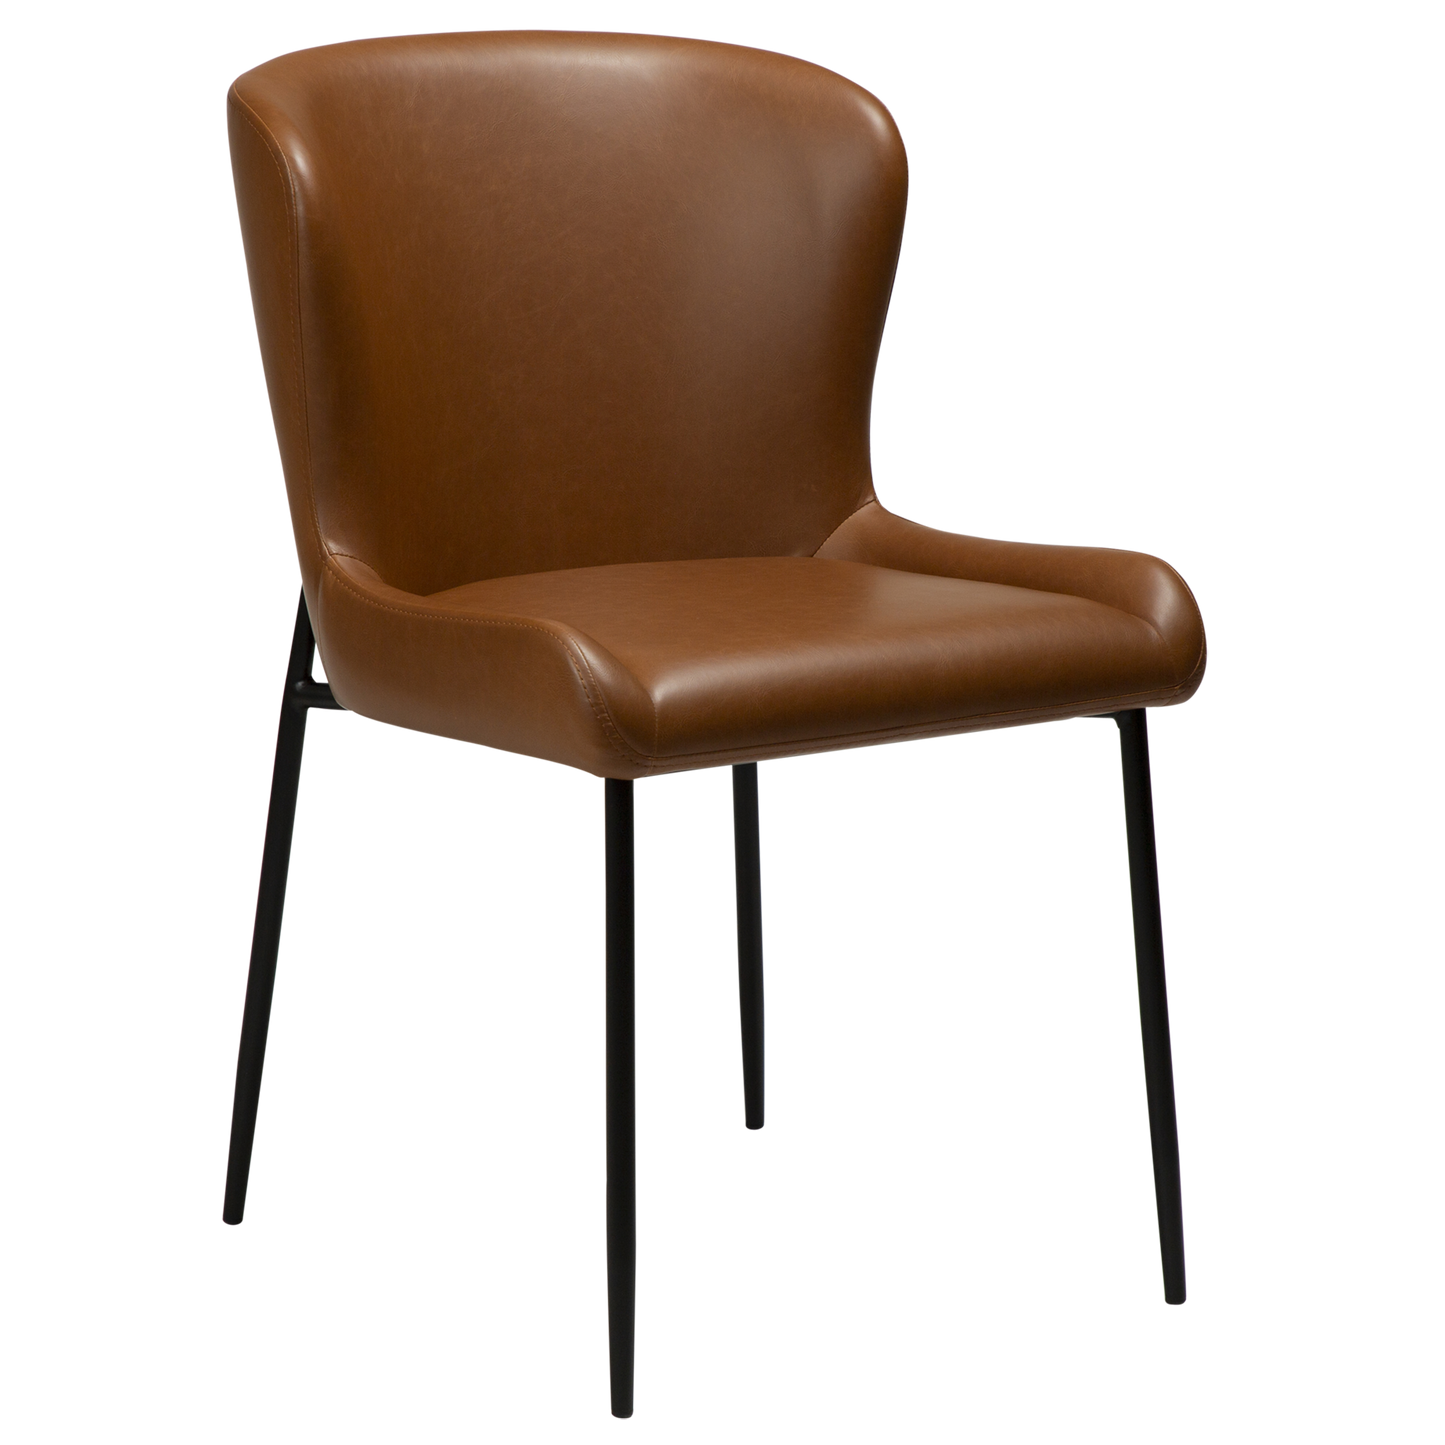 2 stk. GLAMOROUS Spisebordsstole, lys brun kunstlæder, sorte metal ben.